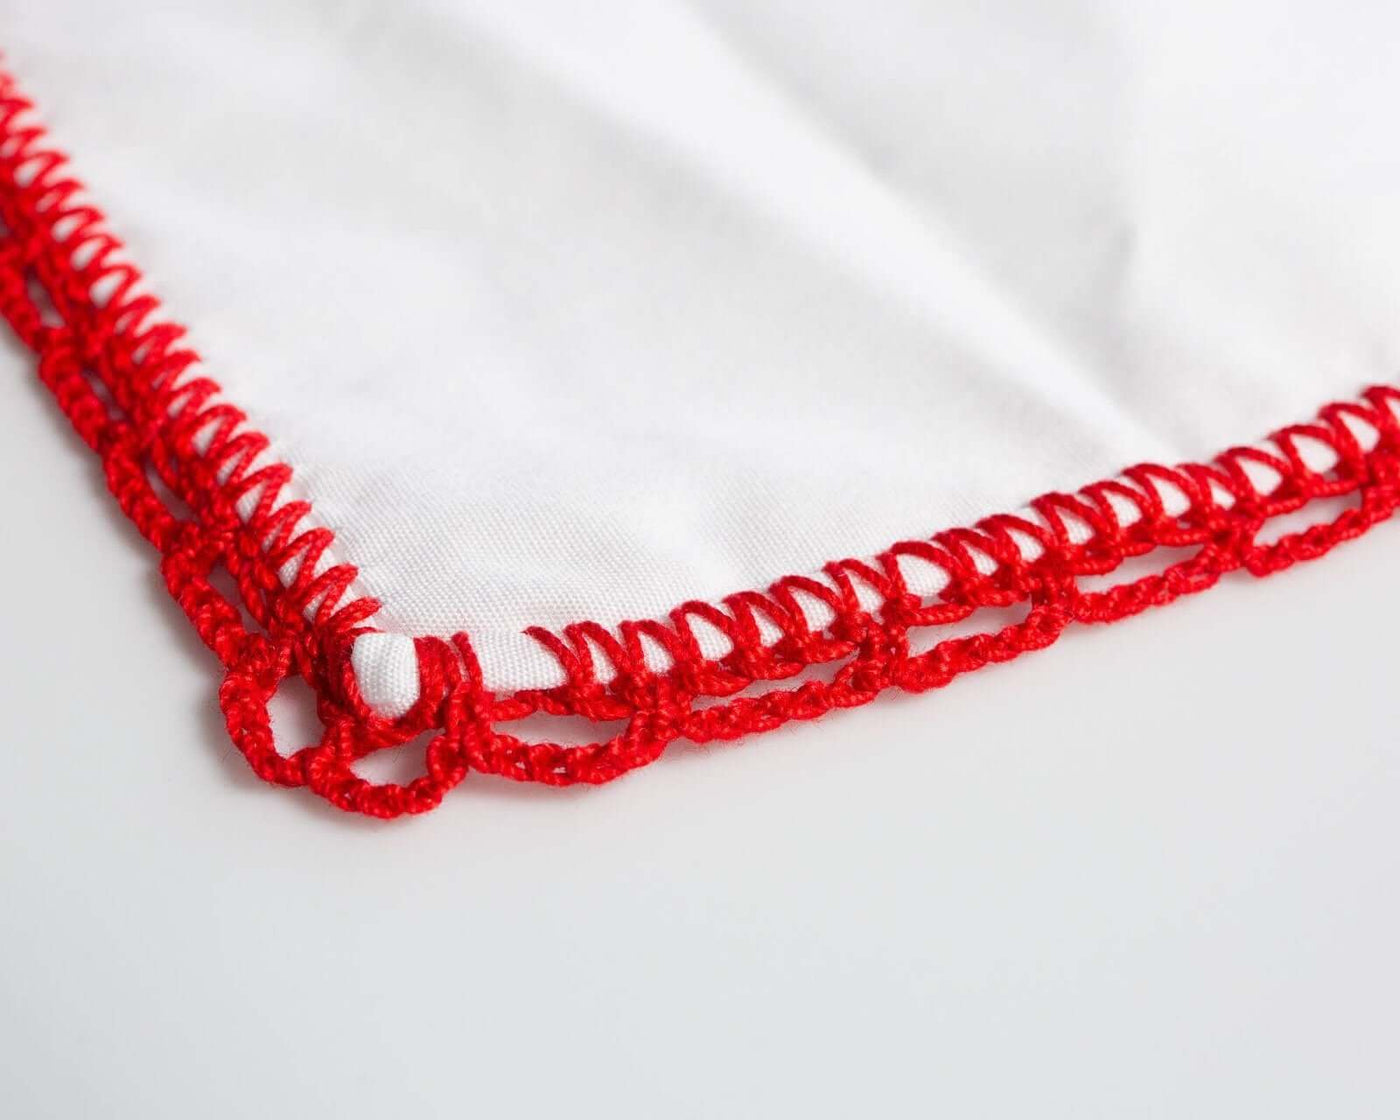 -Einstecktuch Crochet Red - Herr von Welt - Calabrese 1924